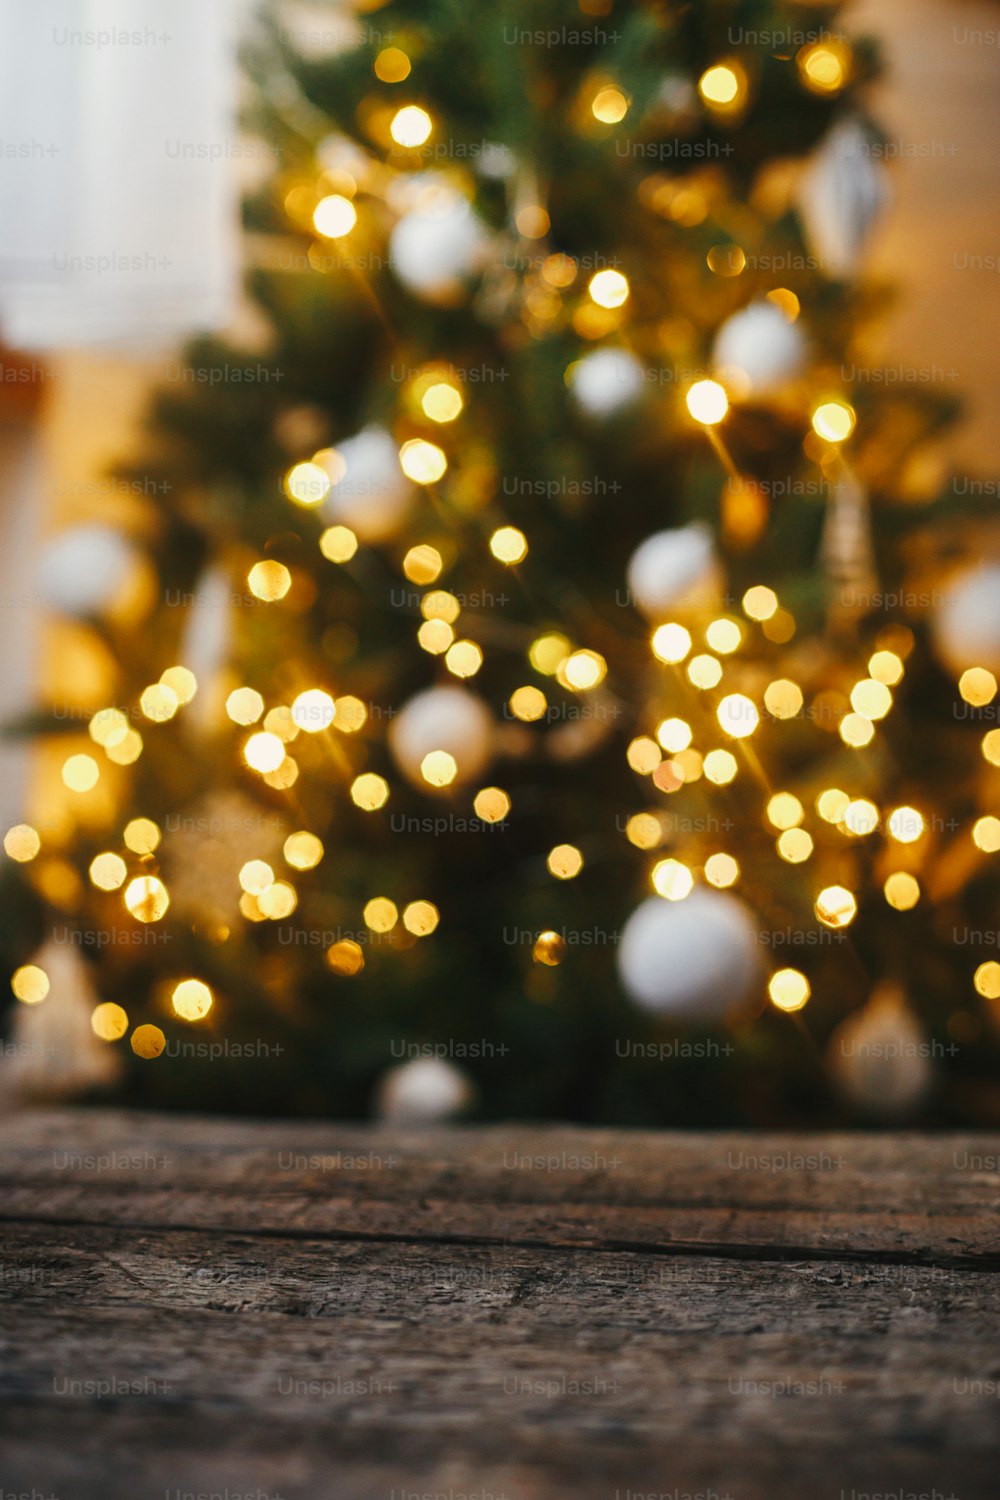 Fundo de Natal. Madeira rústica no fundo das luzes da árvore de Natal bokeh dourado. Espaço para texto. Árvore decorada brilhando na sala escandinava festiva. Véspera de Natal atmosférica. Boas Festas